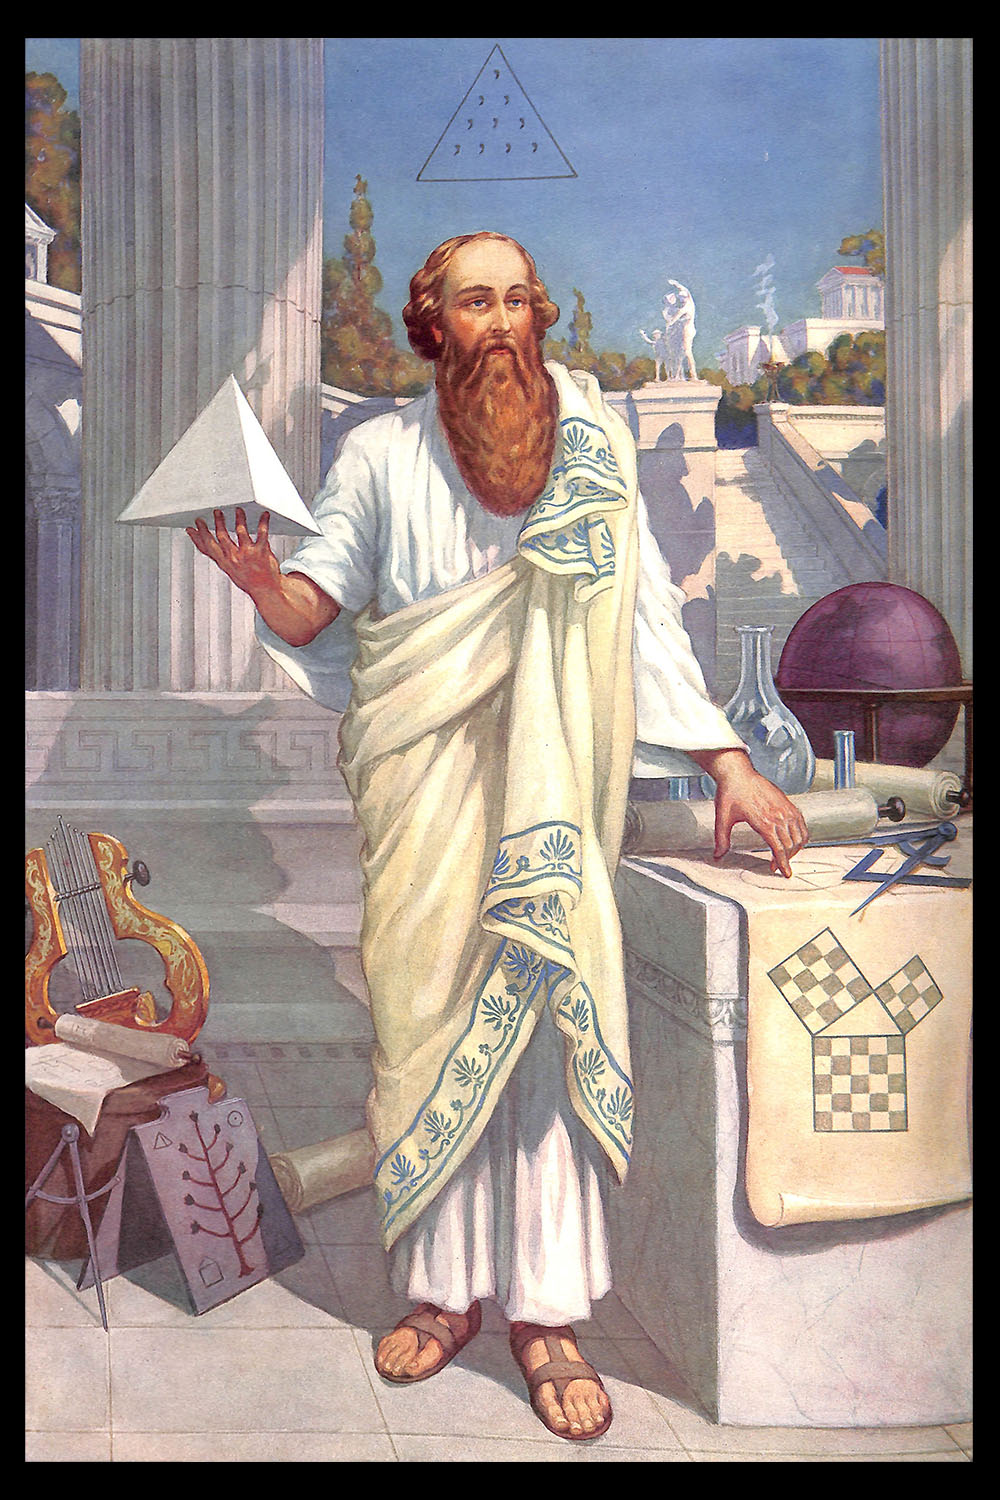 PLATE 12: Pythagoras